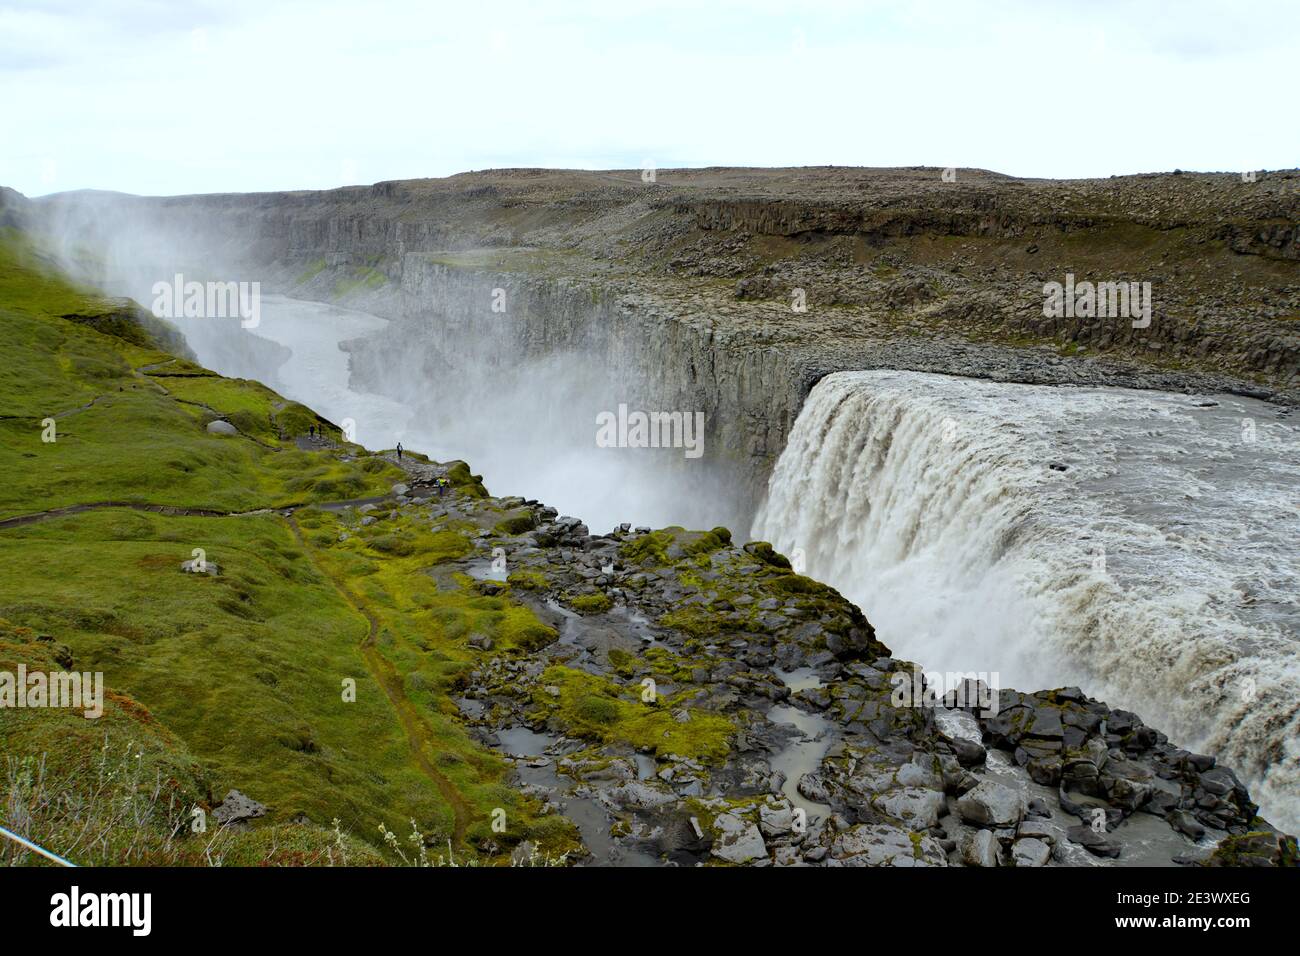 Belle vue de Dettifoss, une chute d'eau dans le parc national de Vatnajokull dans le nord-est de l'Islande pendant l'été Banque D'Images